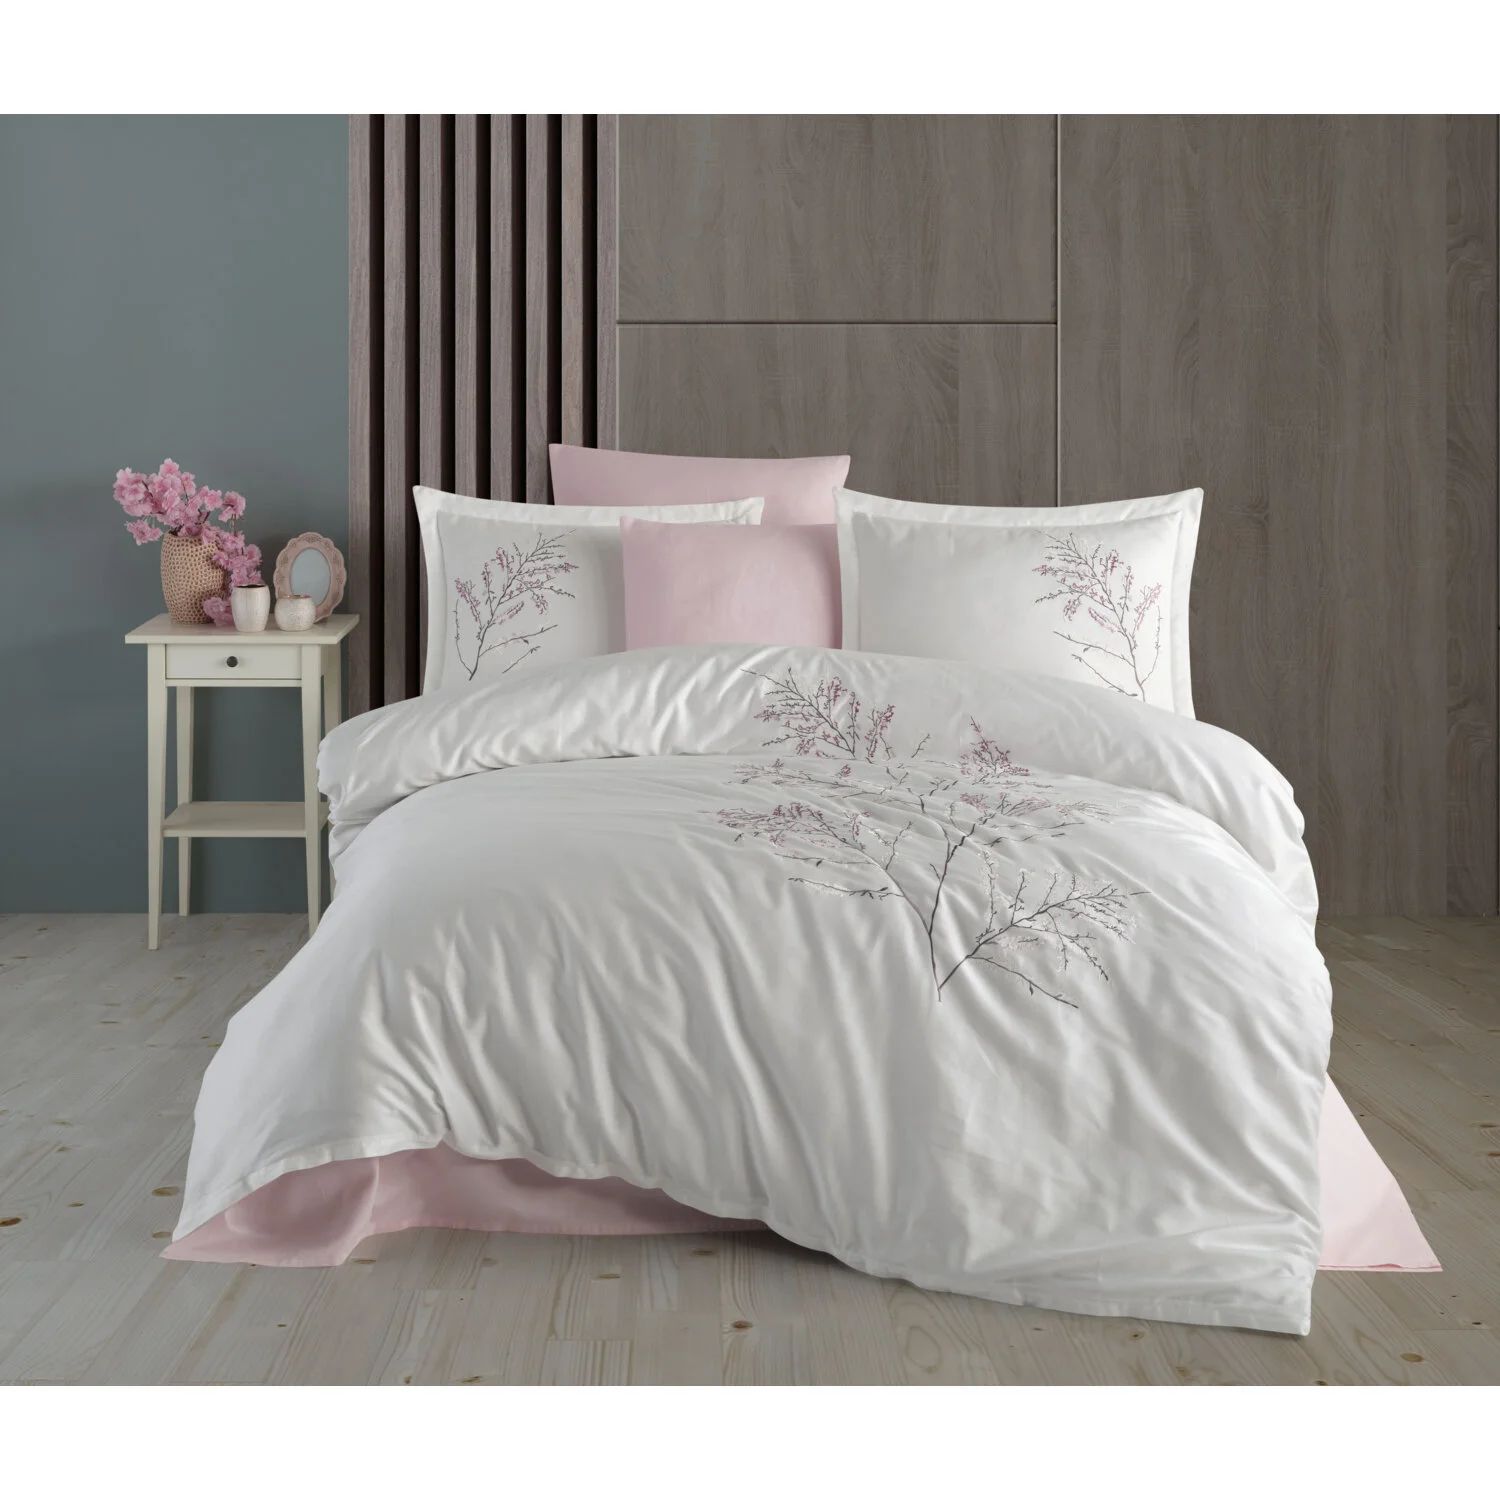 Комплект постельного белья кремового цвета с кружевной вышивкой Blesk